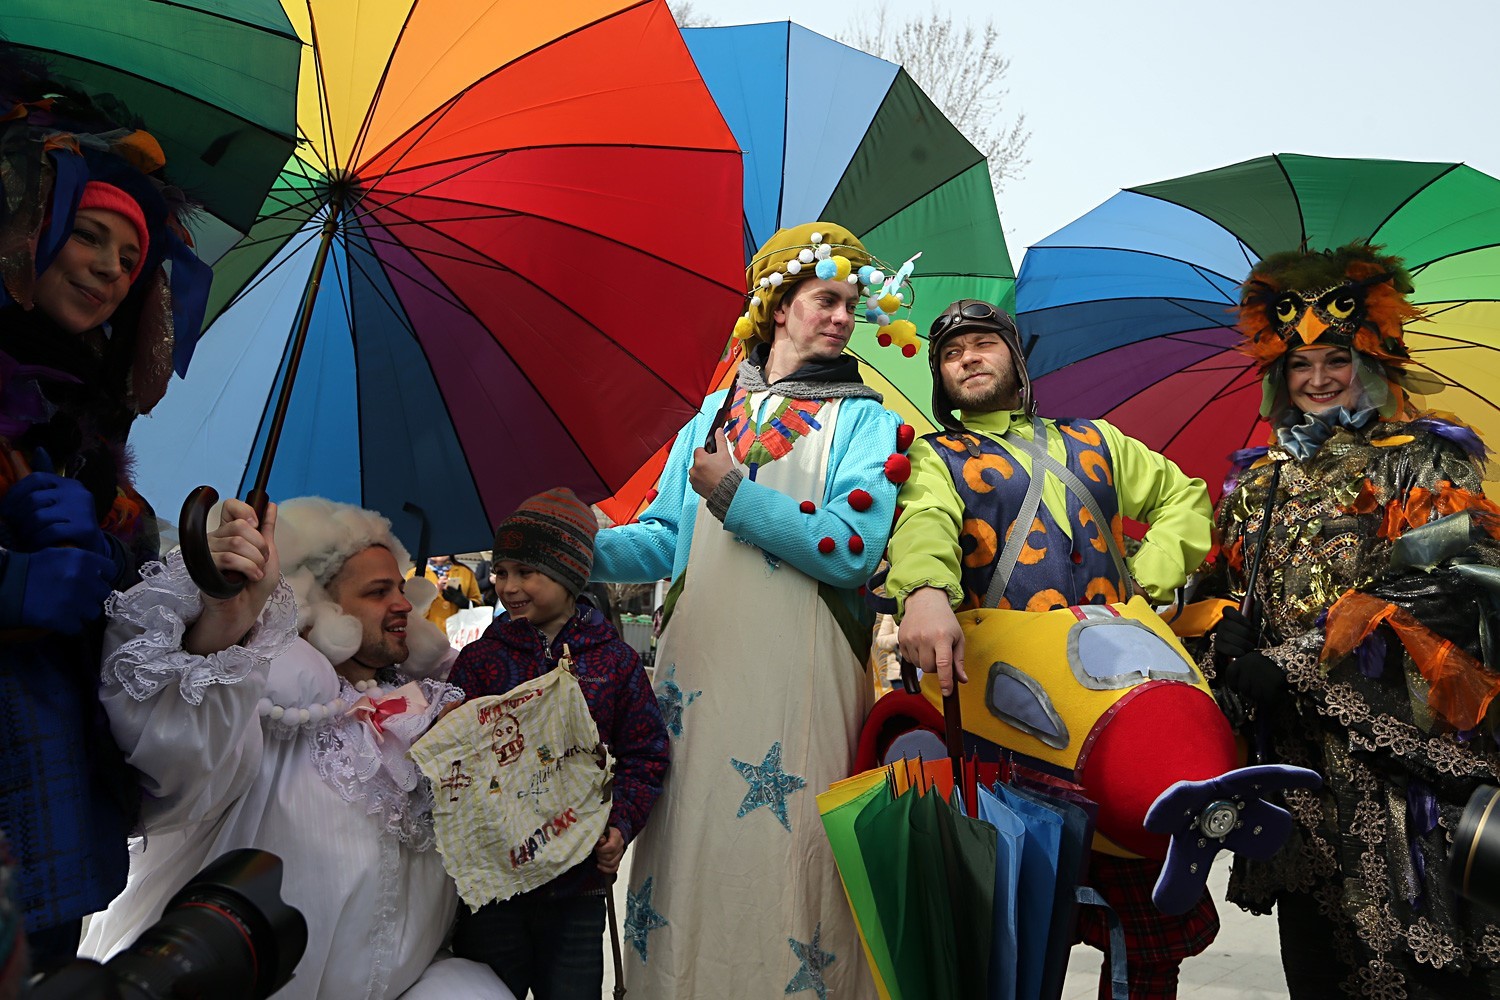 Spomladanska parada na Velikonočnem festivalu daril, Tverski bulvar.